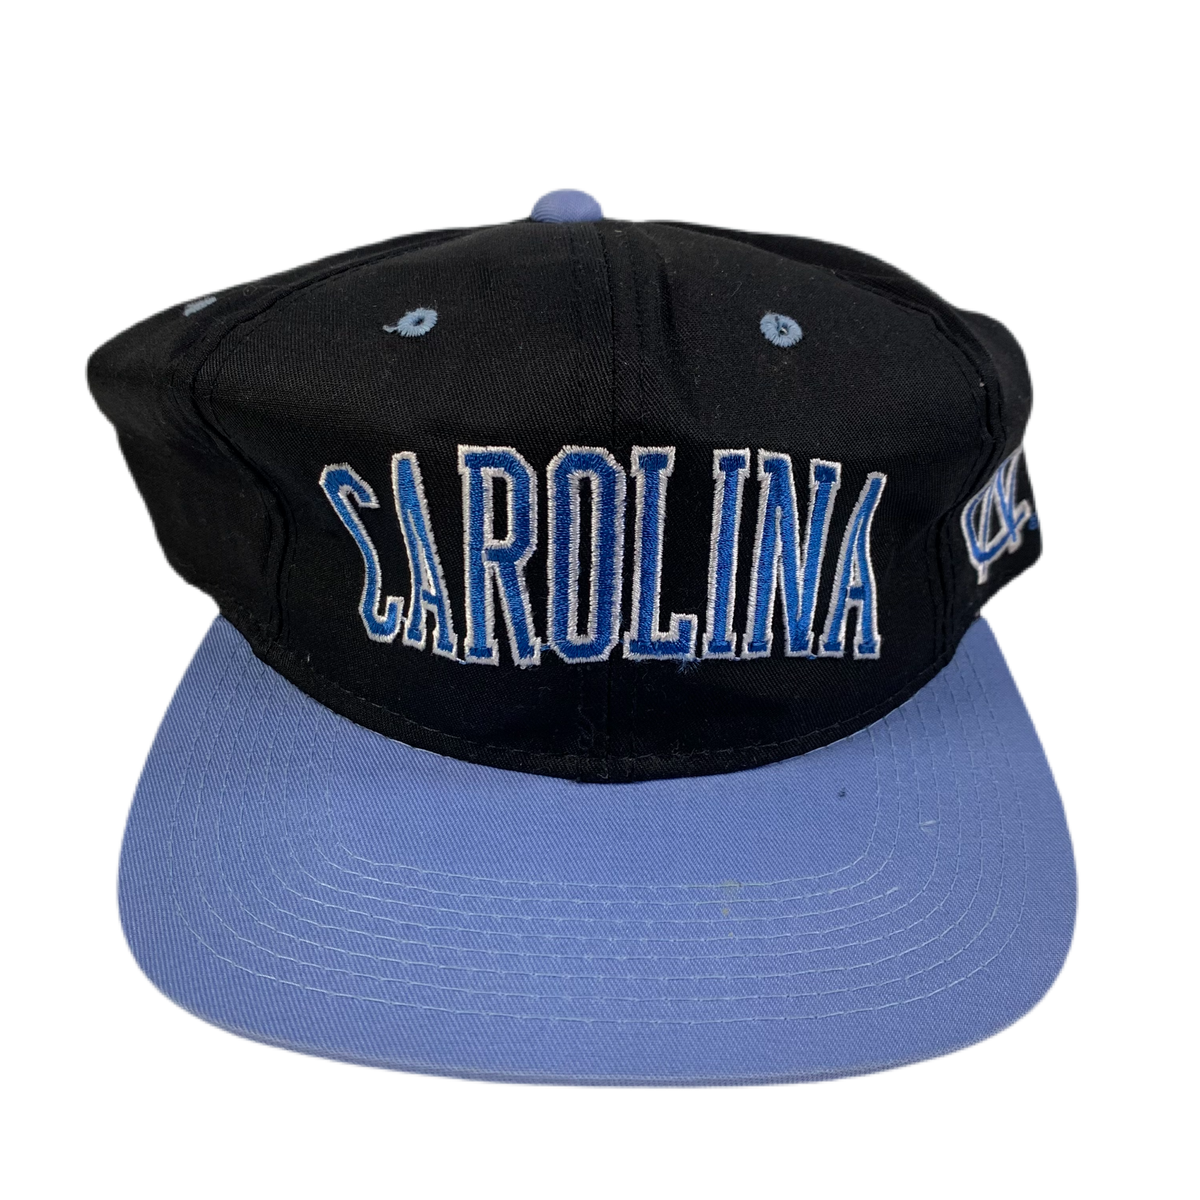 Vintage North Carolina &quot;Tarheels&quot; Snapback Hat